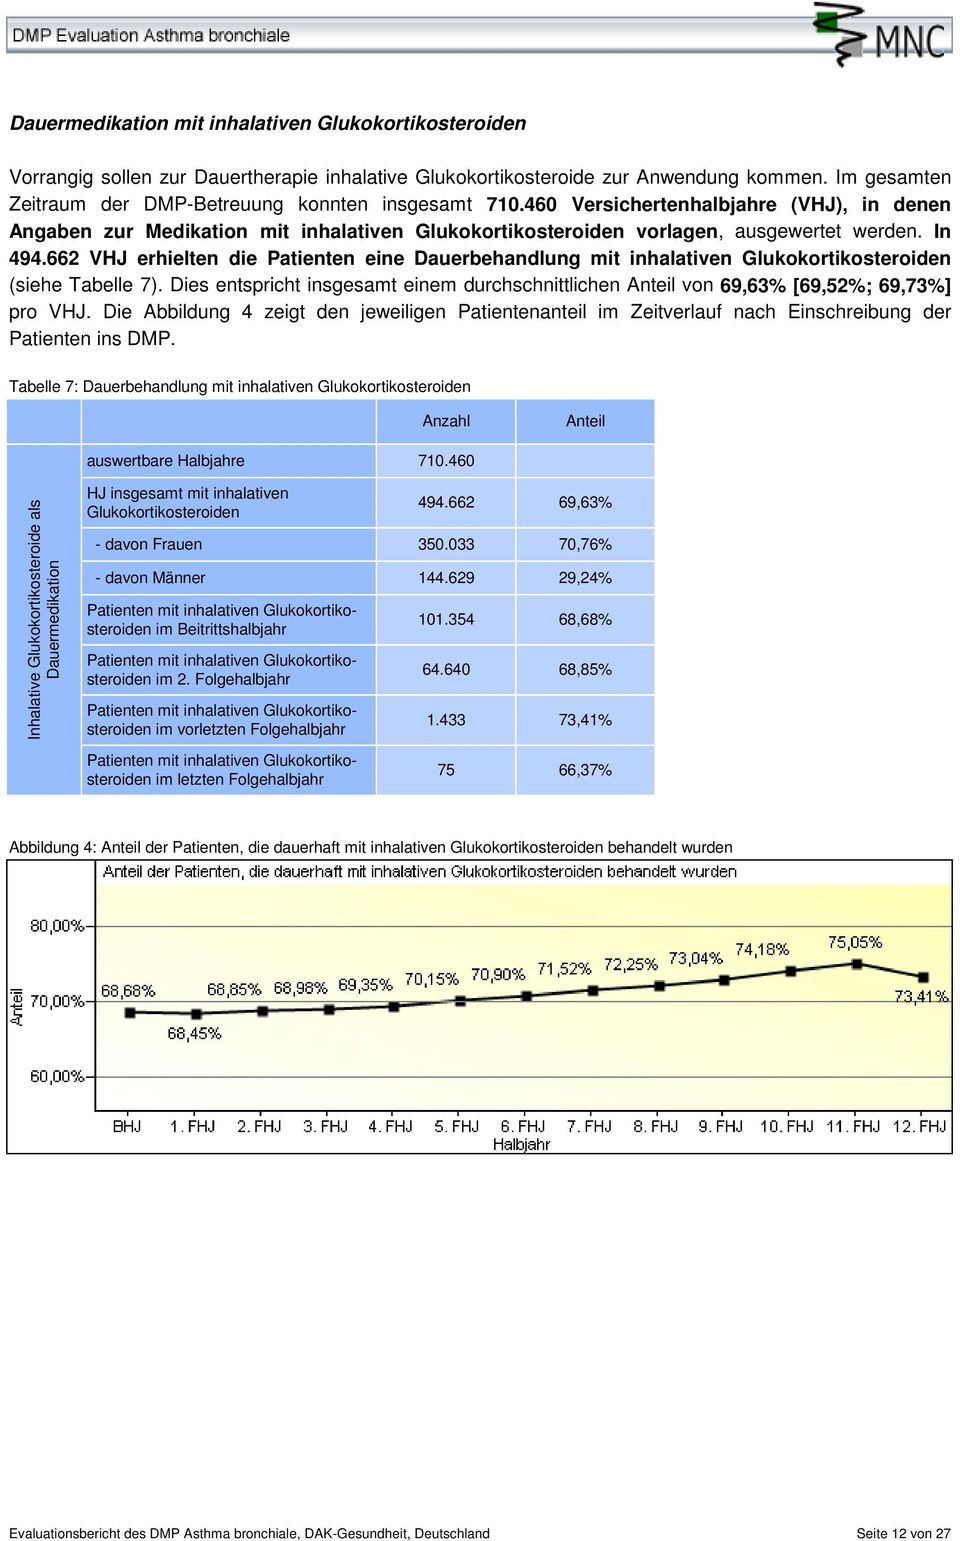 In 494.662 VHJ erhielten die Patienten eine Dauerbehandlung mit inhalativen Glukokortikosteroiden (siehe Tabelle 7).